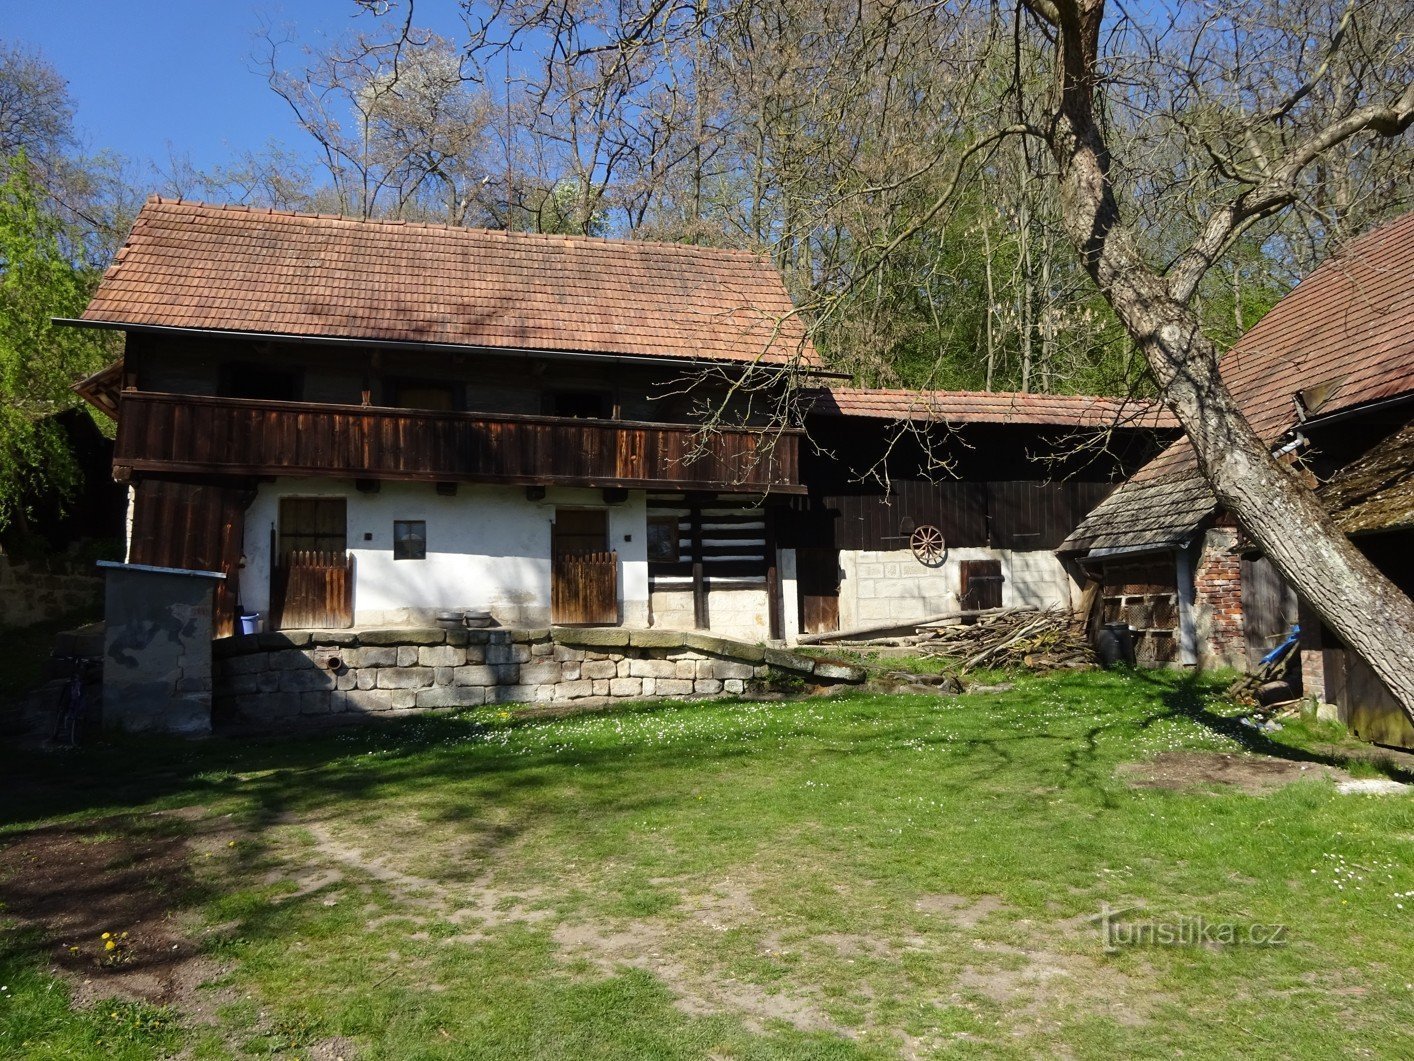 The village of Střehom near Dolní Bouzov and the fairytale mill